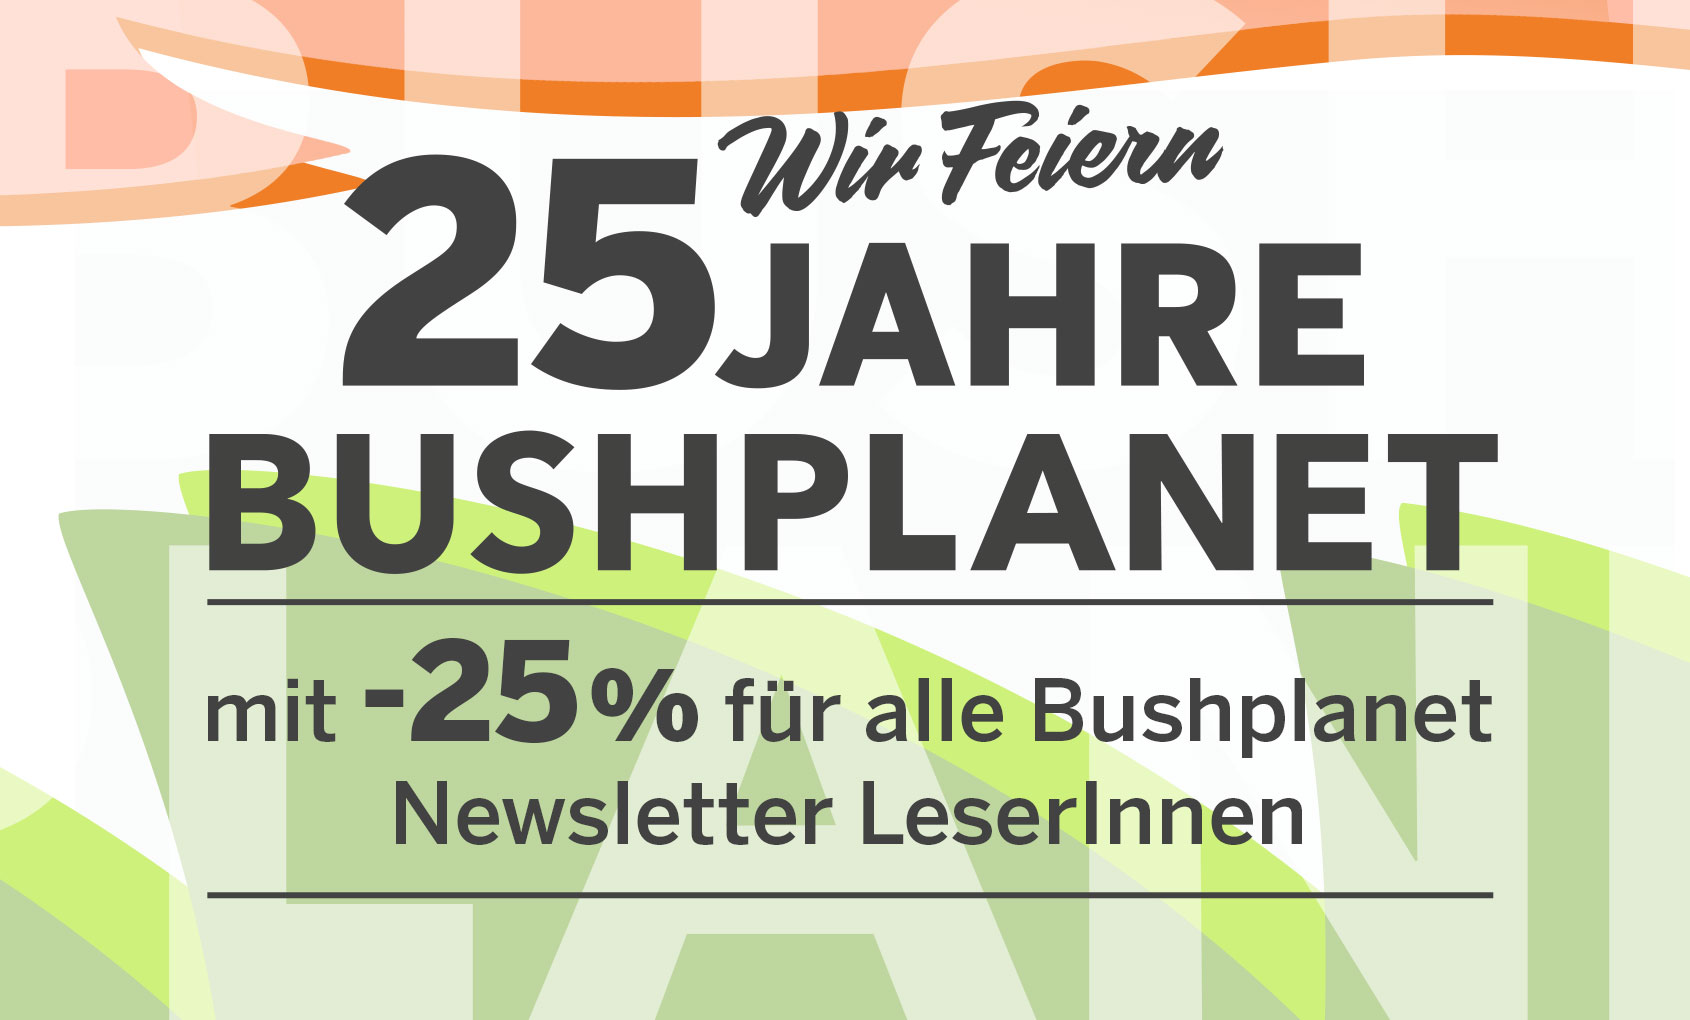 25 Years of Bushplanet